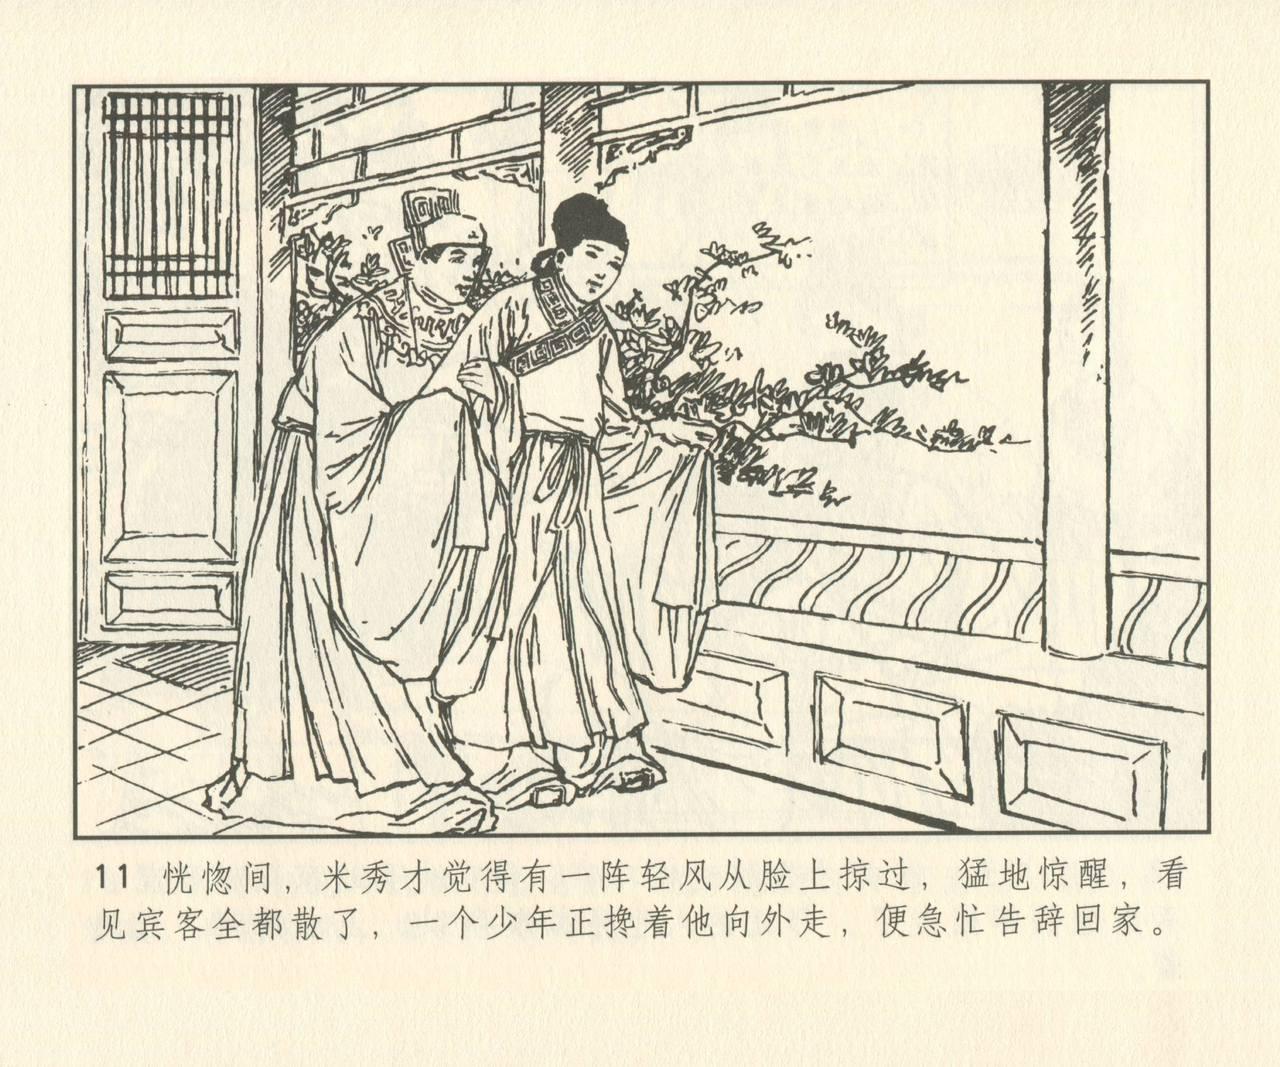 聊斋志异 张玮等绘 天津人民美术出版社 卷二十一 ~ 三十 139